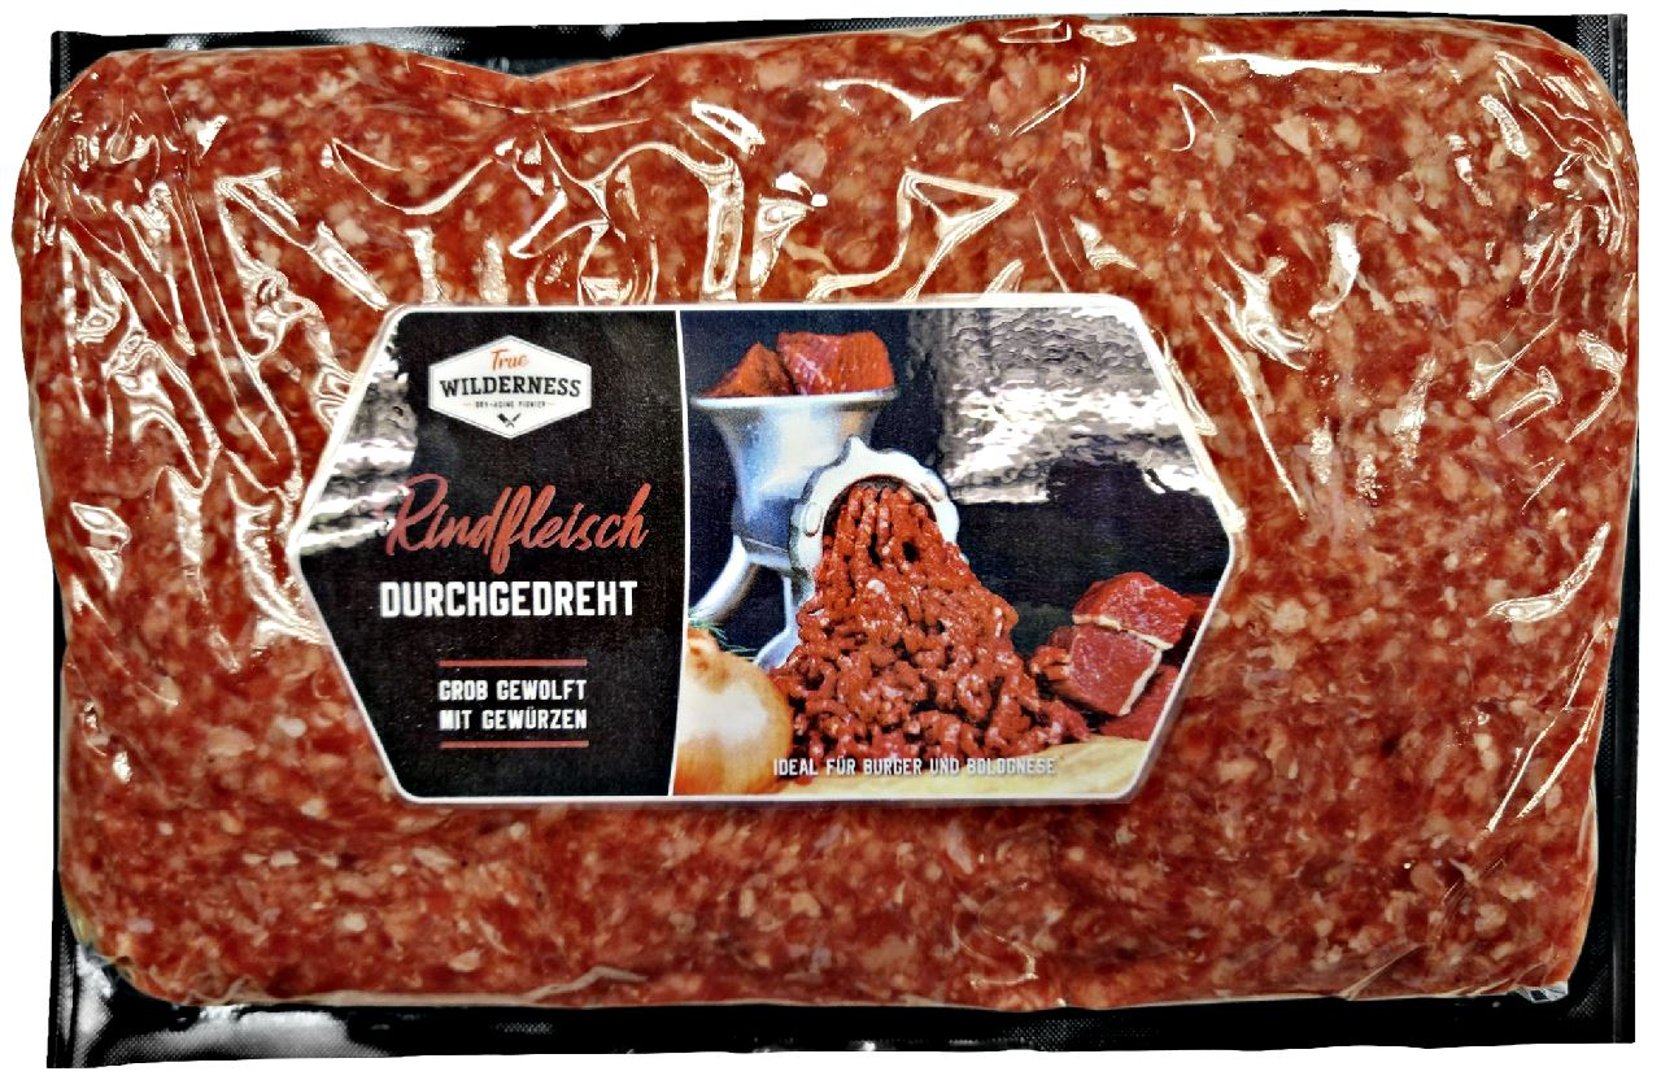 Emsrind - Rindfleisch für Burger und Bolgnese ca. 1 kg, 15er Karton